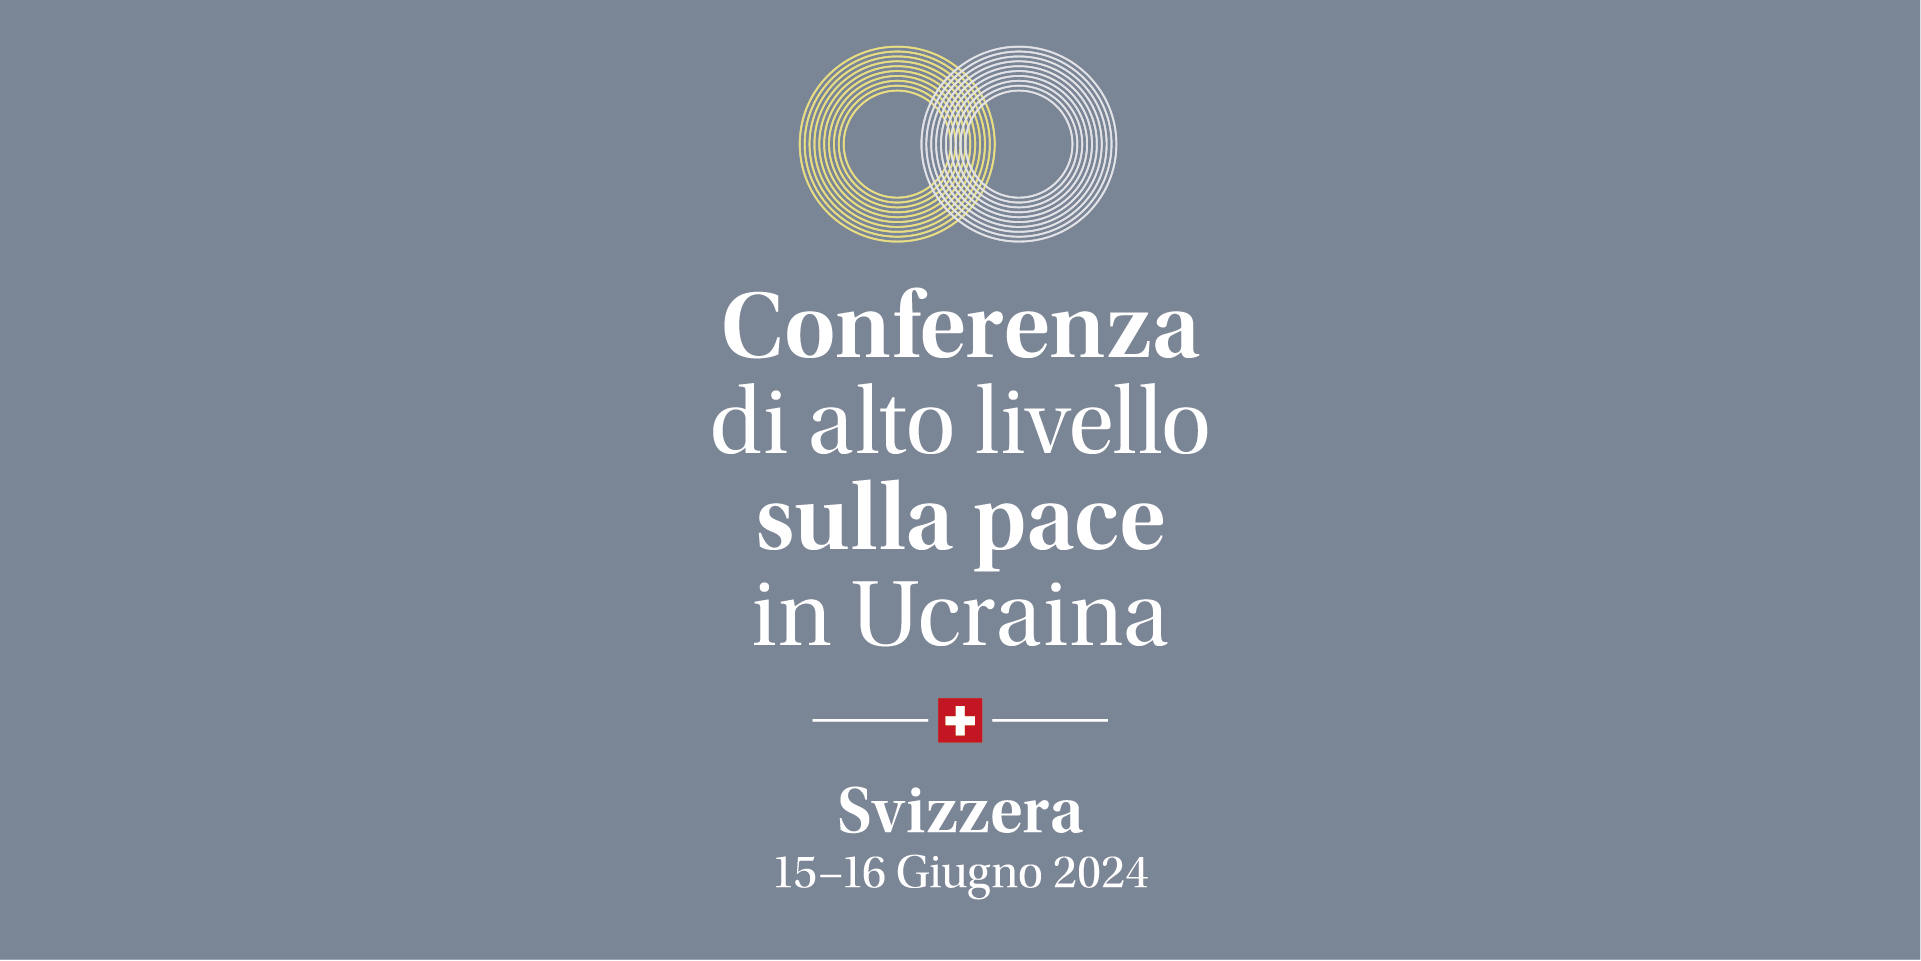 Immagine raffigurante un cerchio blu e uno giallo che si intersecano. Completata da una croce svizzera – vi si trovano le indicazioni "Conferenza di alto livello sulla pace in Ucraina" e la data "15-16 Giugno 2024".